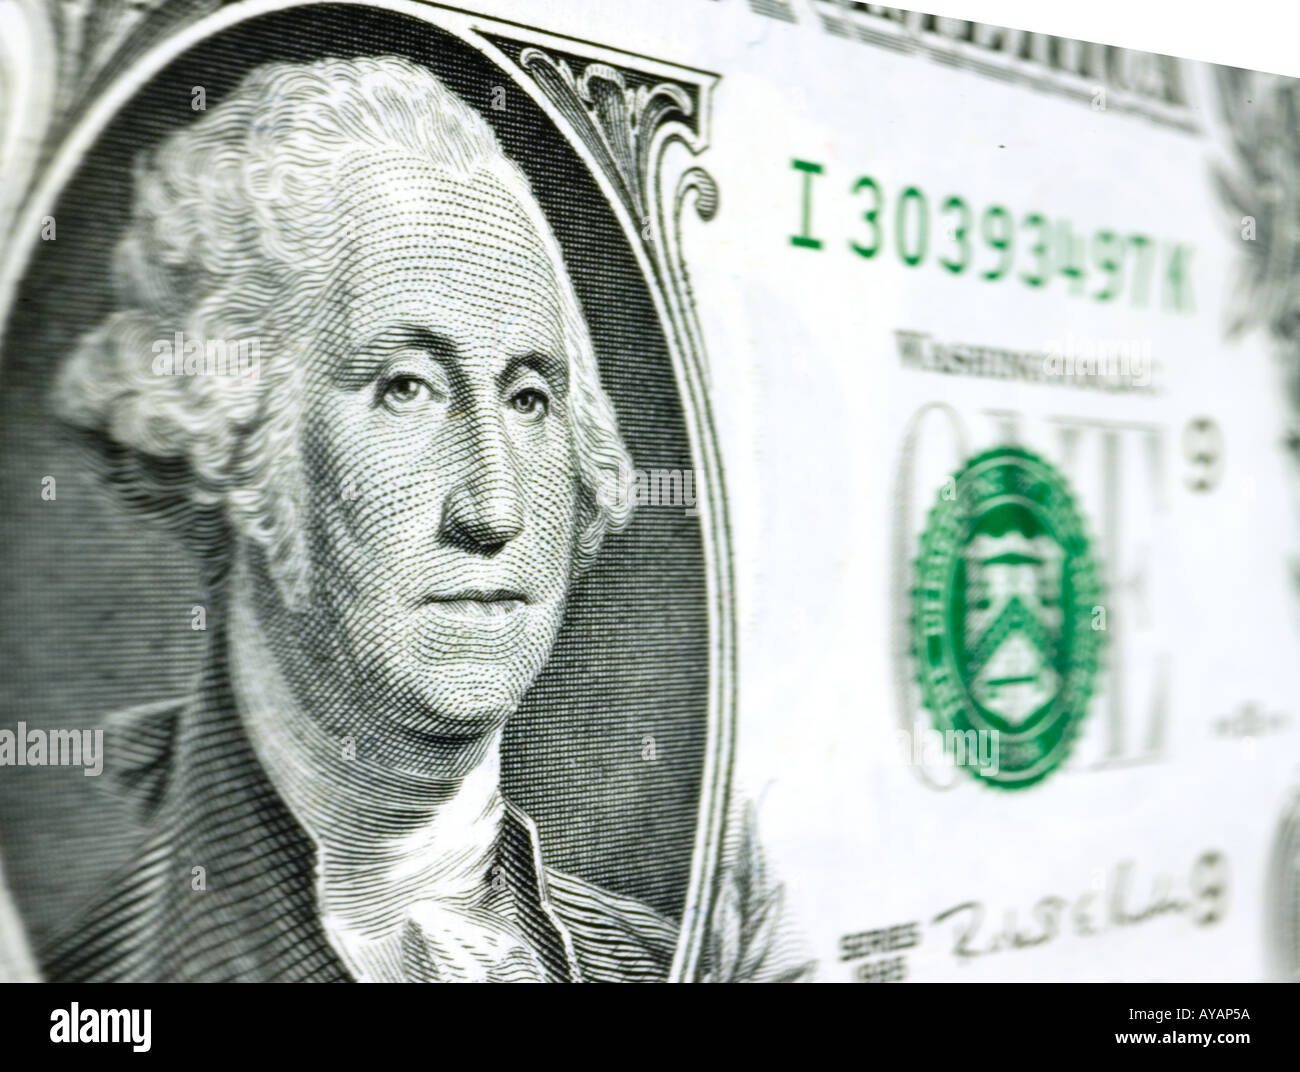 Primo piano di un dollaro US con George Washington ritratto Foto Stock